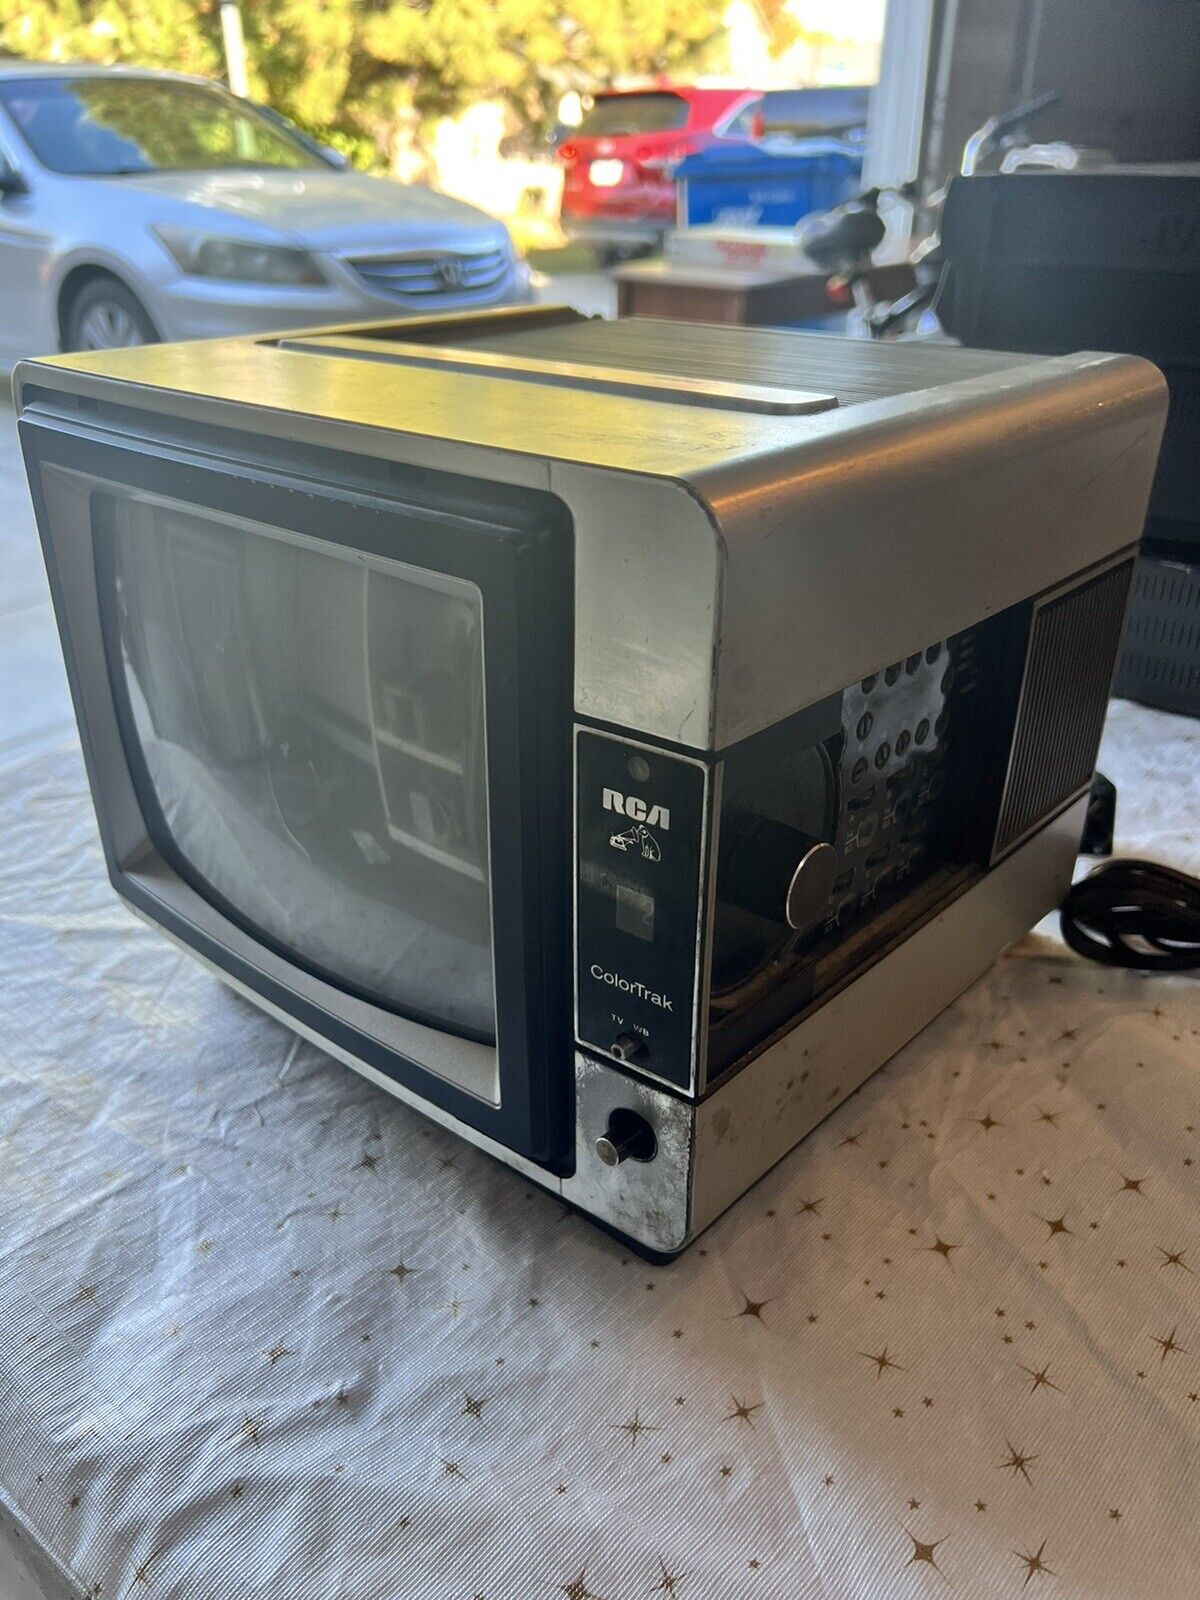 Vintage Rca Colortrak Tv & Fm Spacesaver Retro Erg293s For Parts